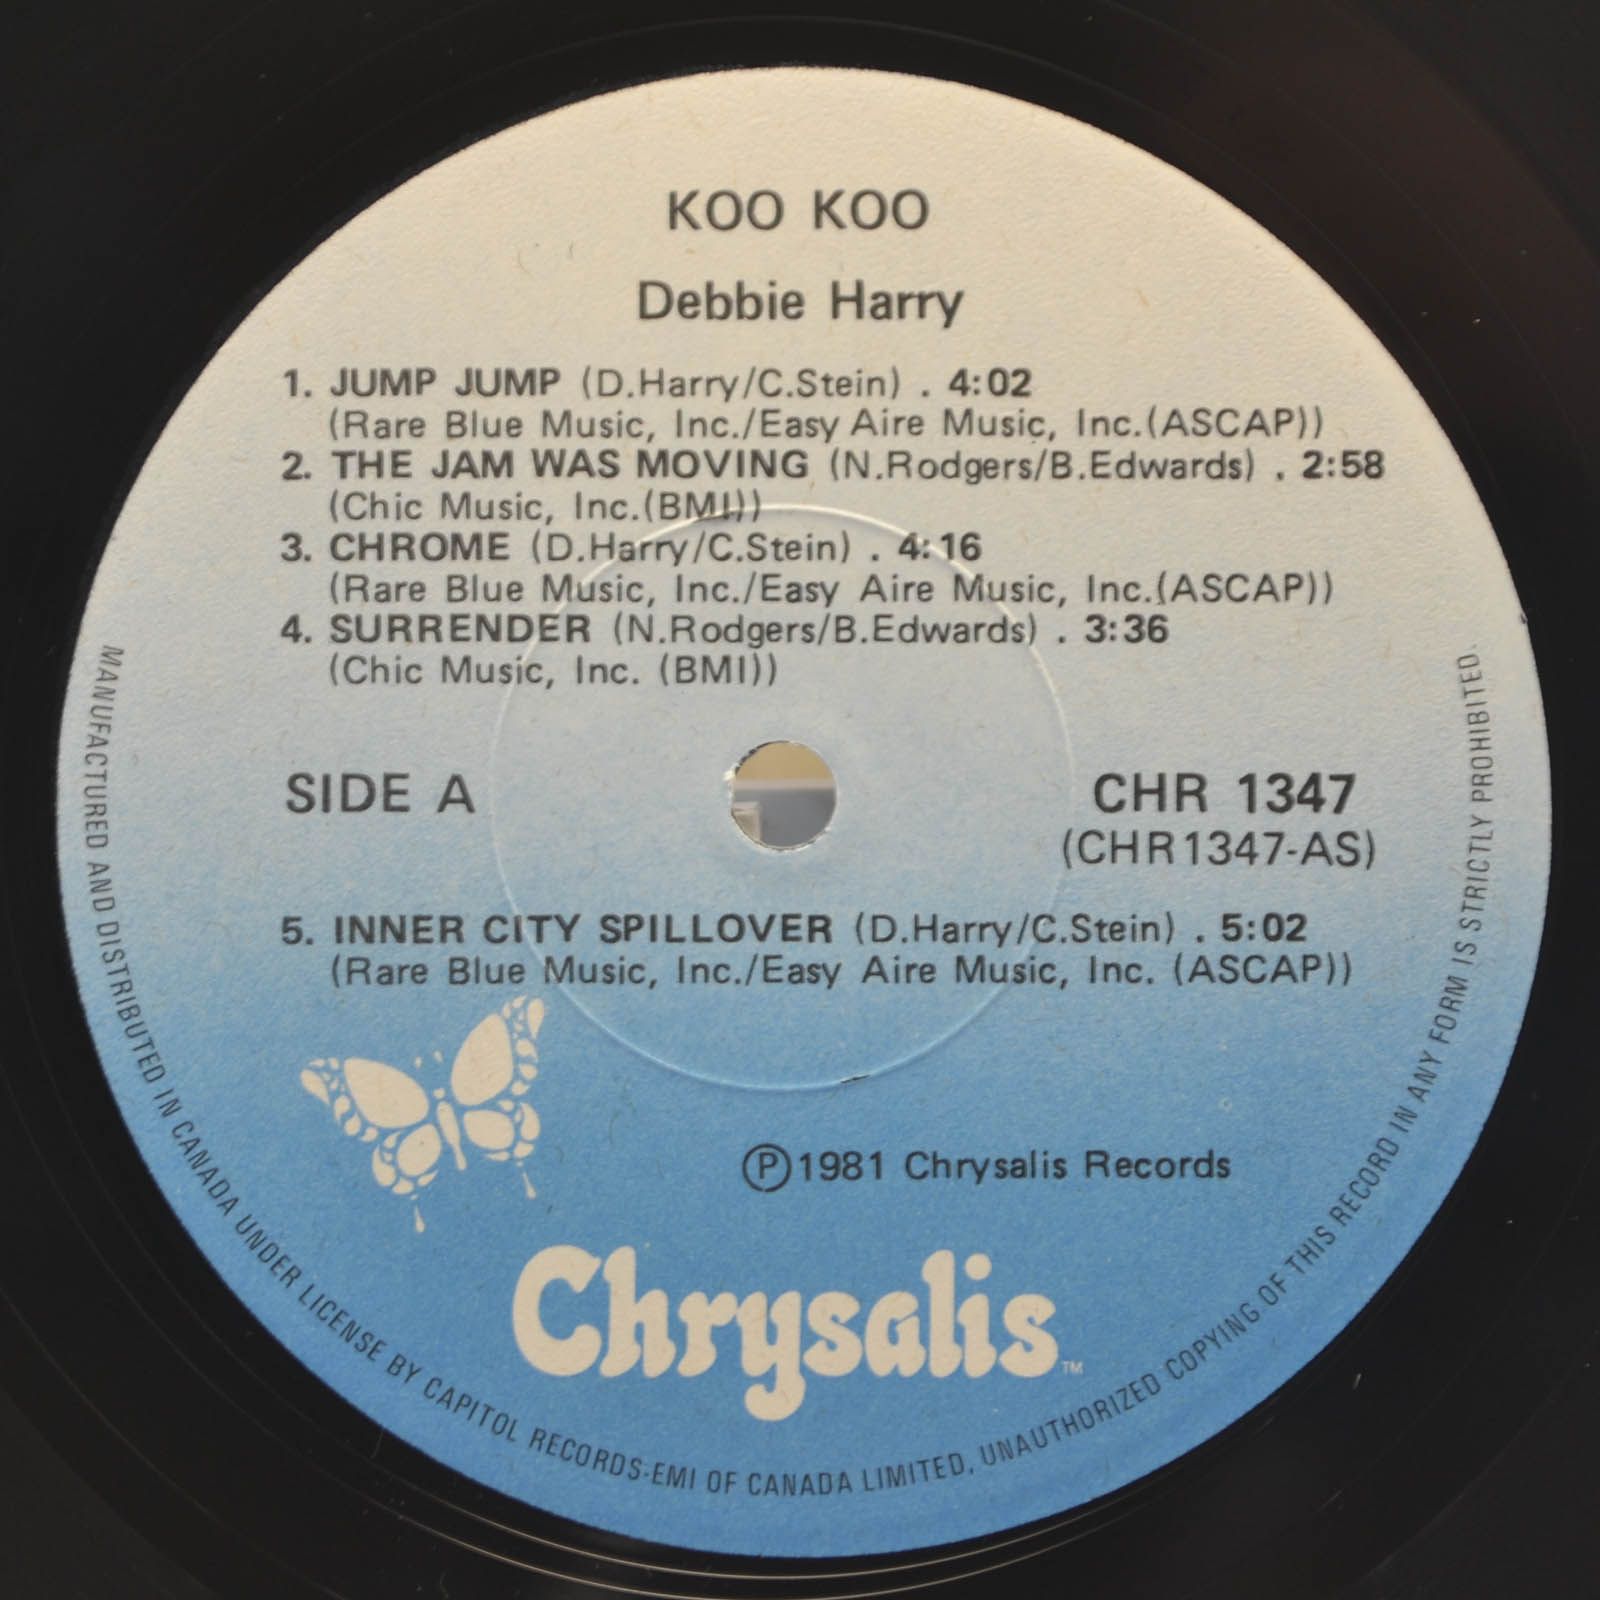 Debbie Harry — KooKoo, 1981